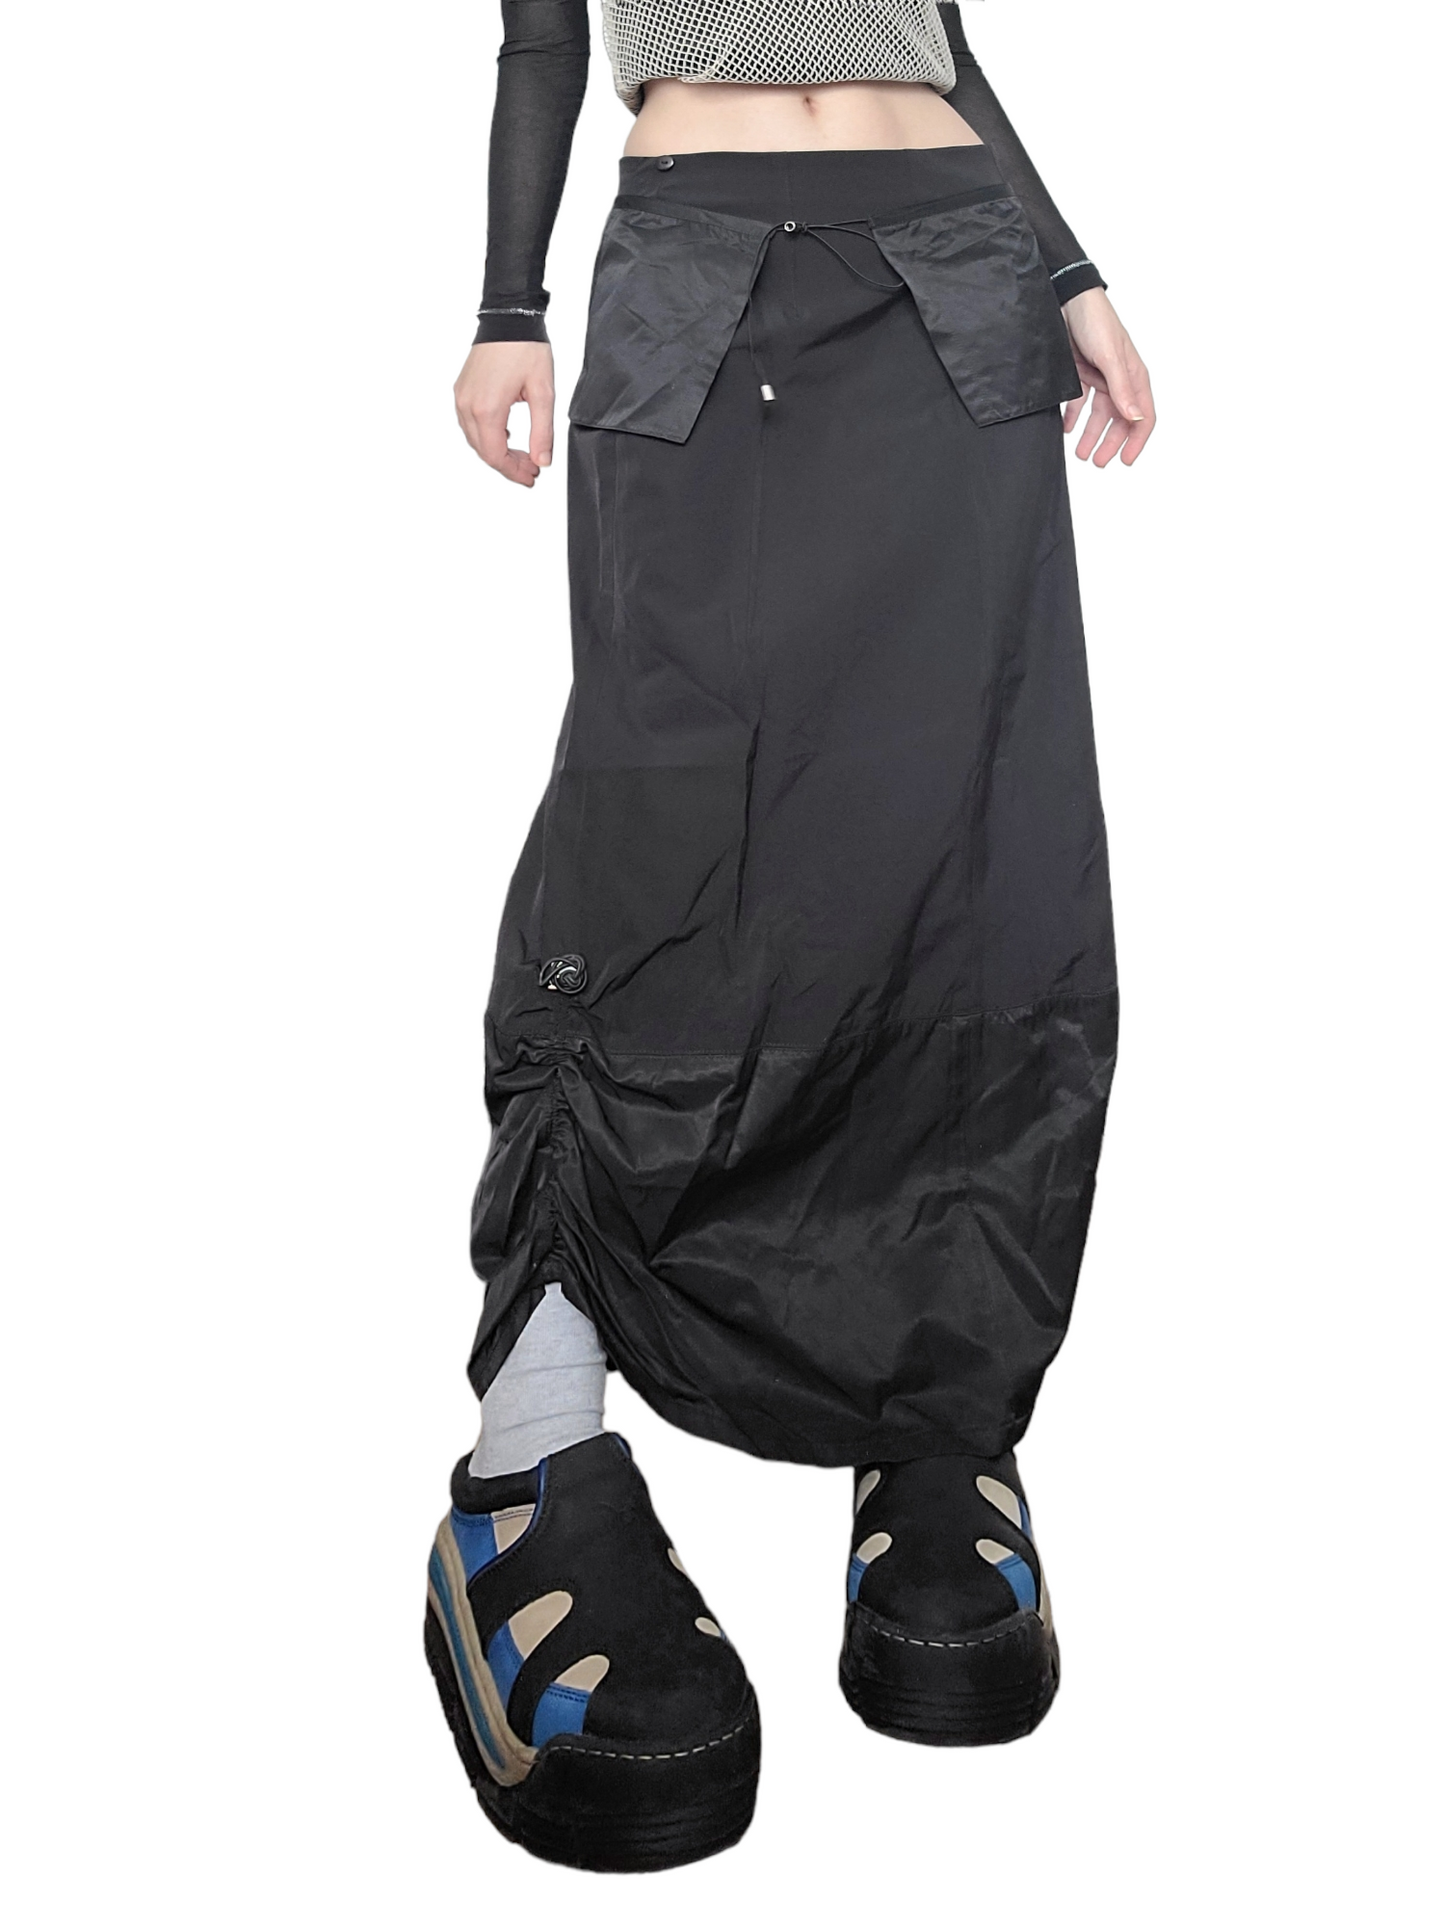 Maxi skirt parachute noire dystopian